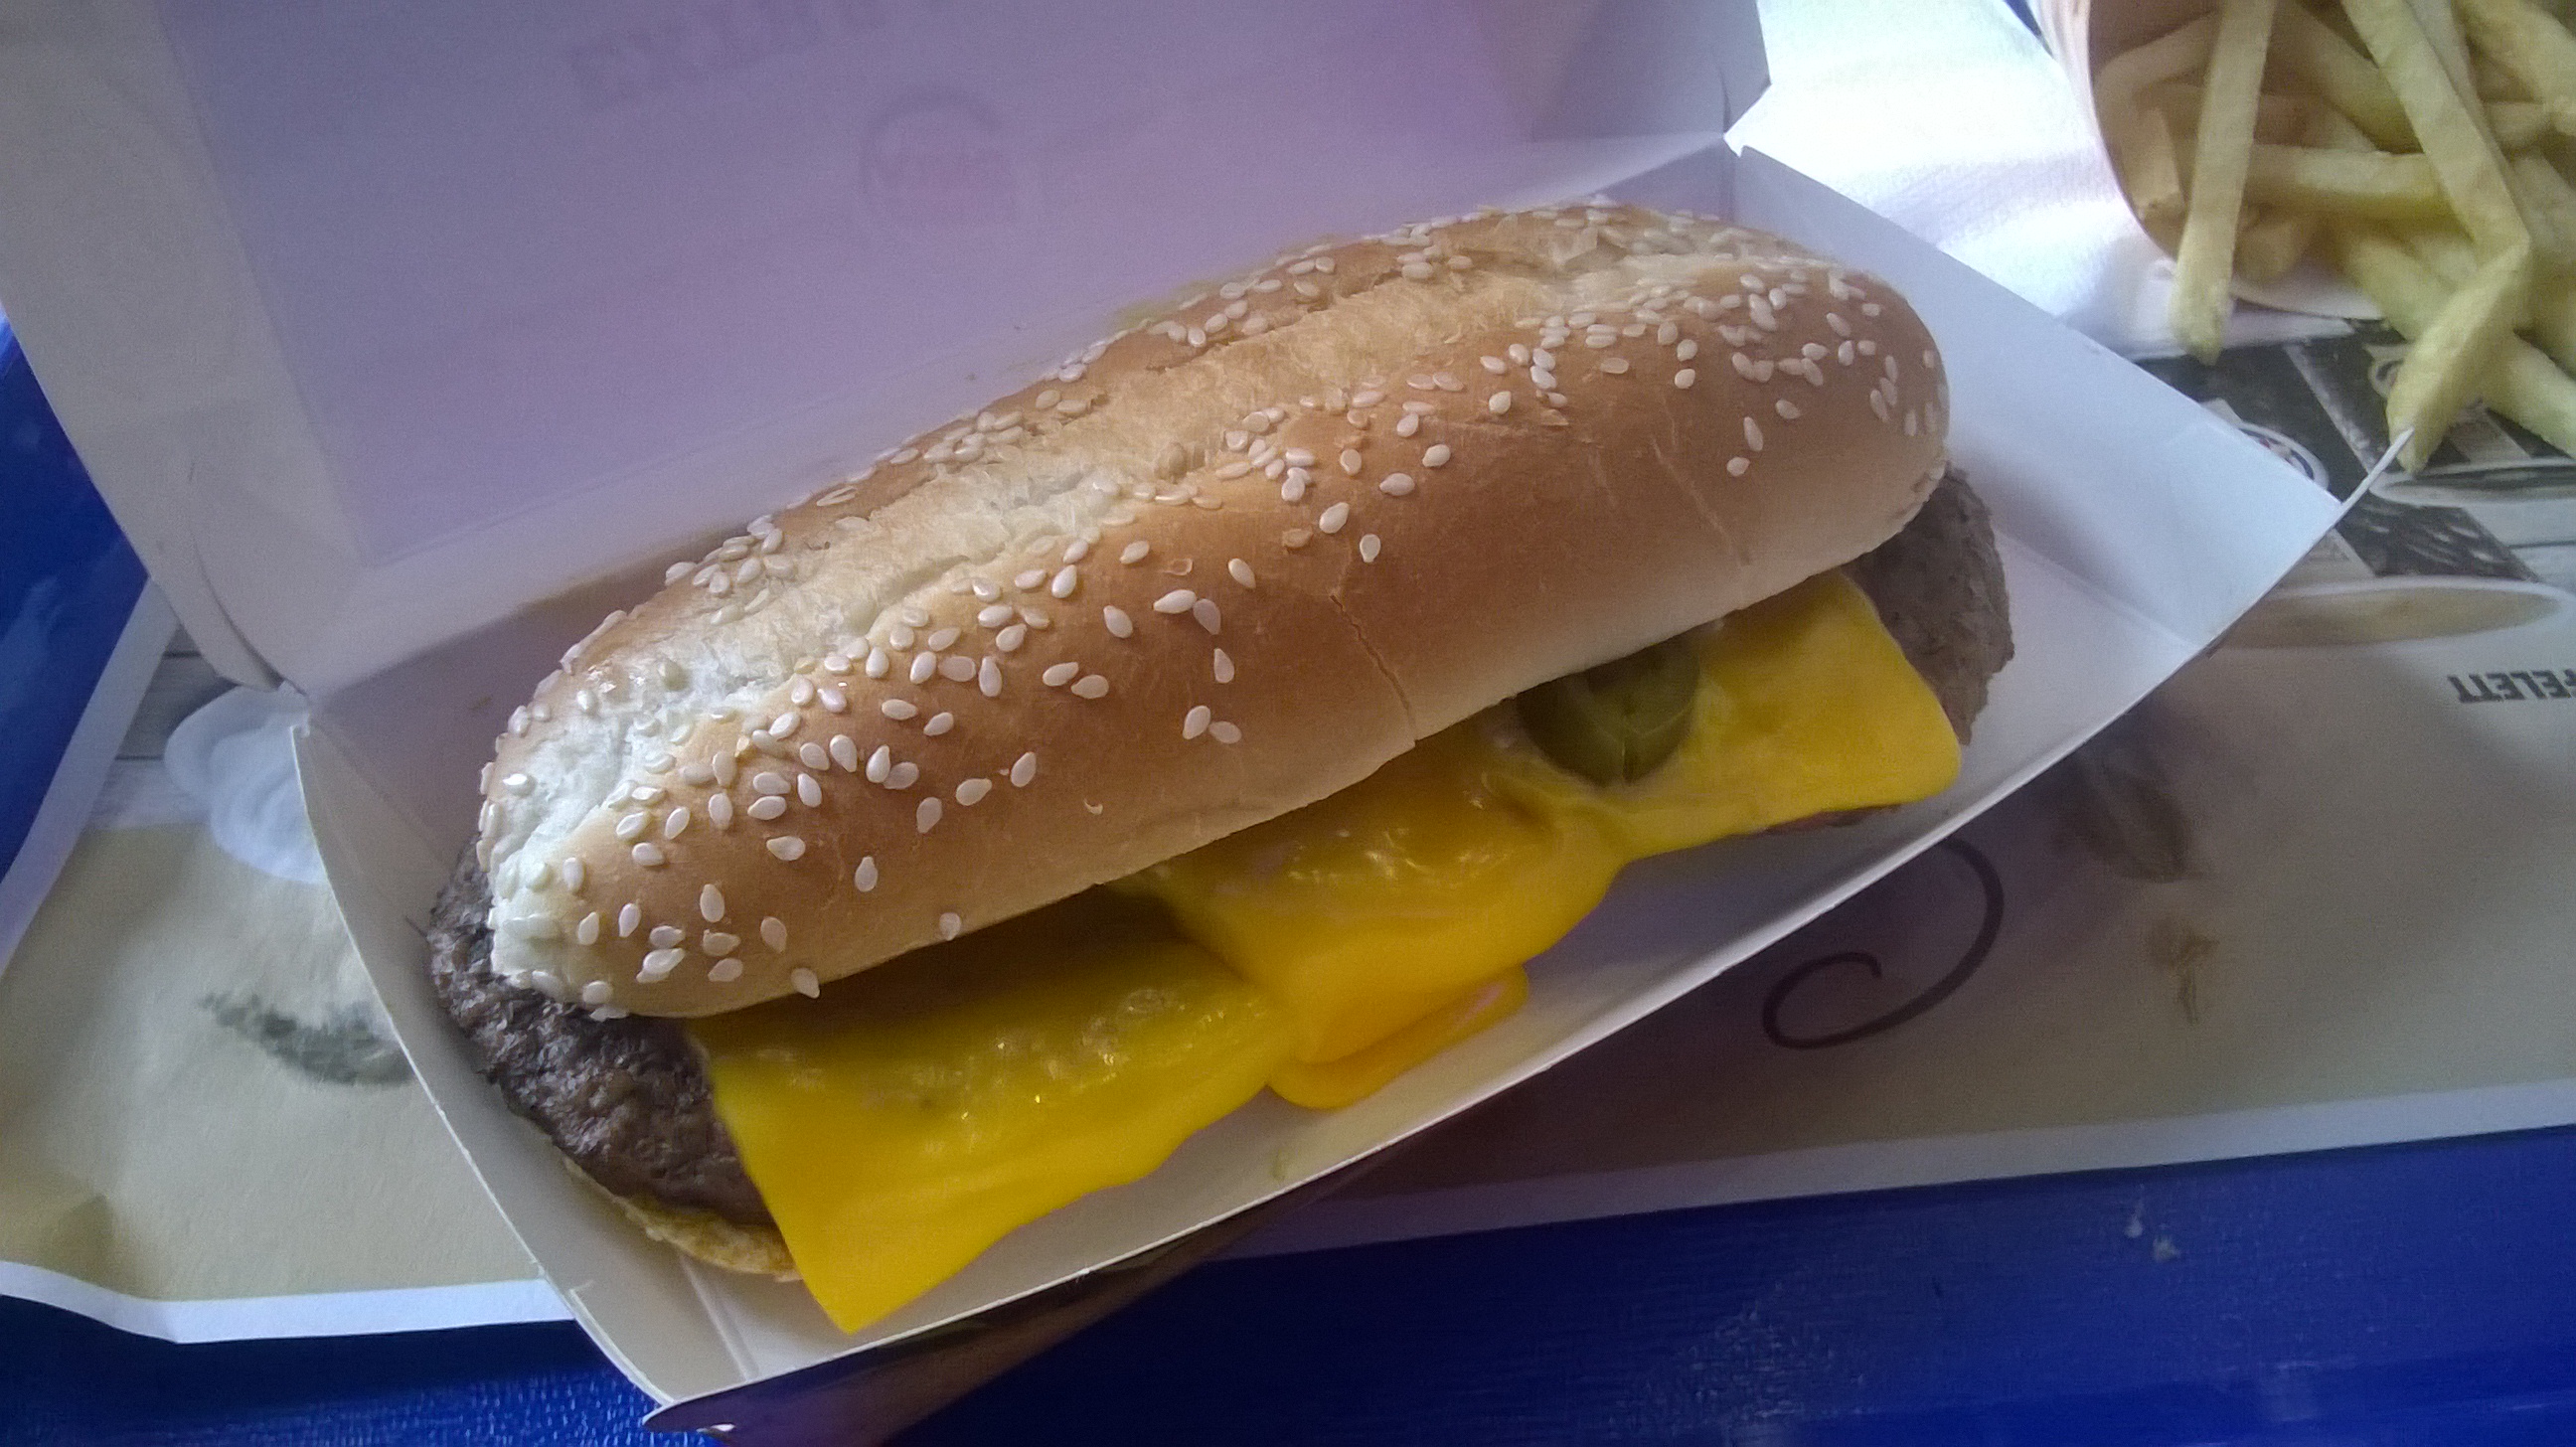 burger_king_xtra_long_chili_cheese.jpg